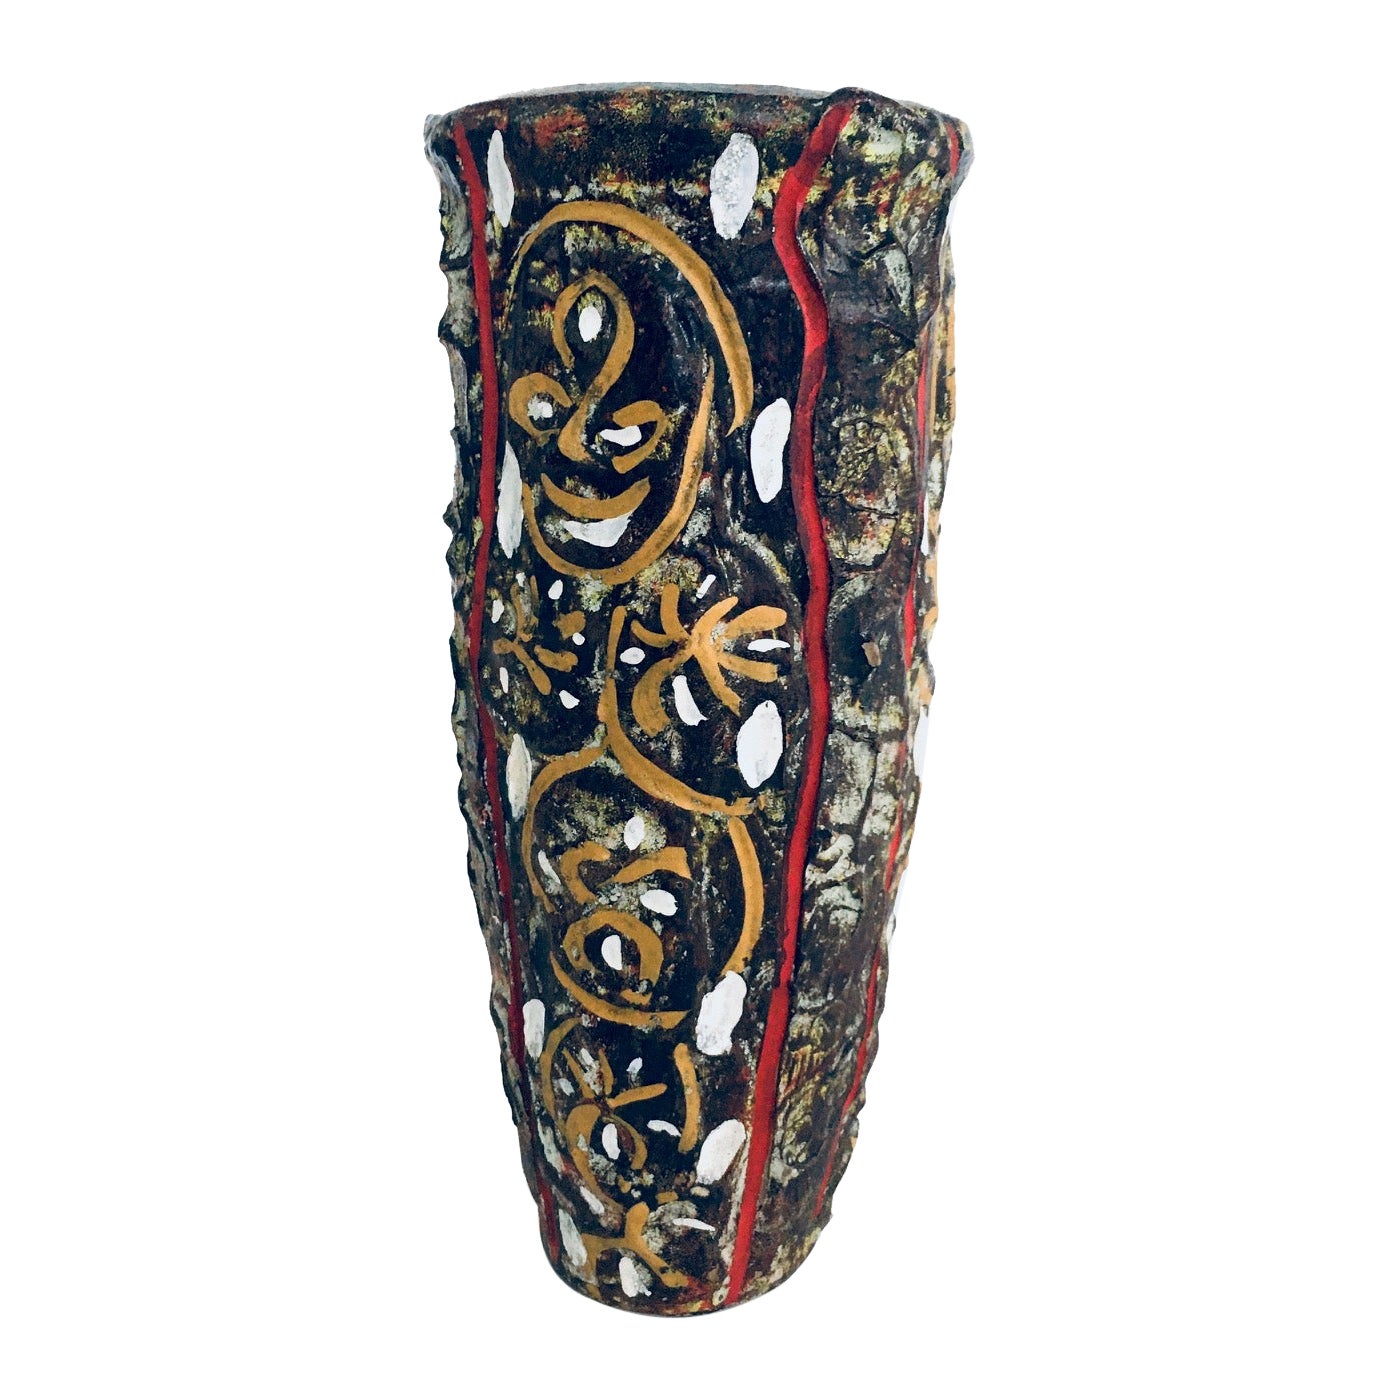 RARE Brutalist Design Art Pottery Studio Painted Vase, Belgium 1960's